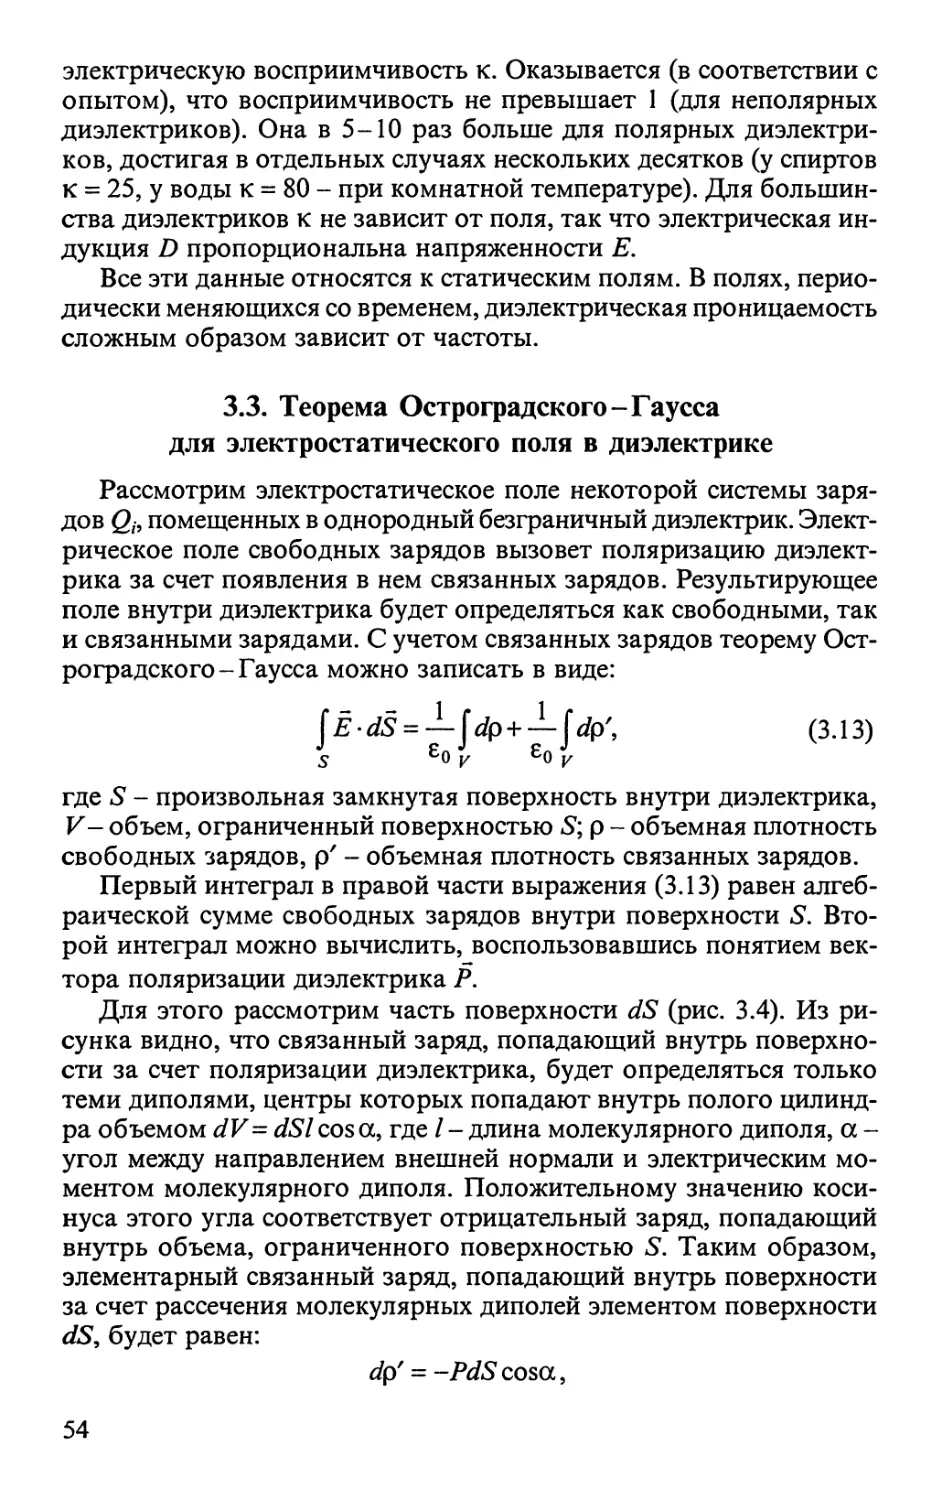 3.3. Теорема Остроградского-Гаусса для электростатического поля в диэлектрике